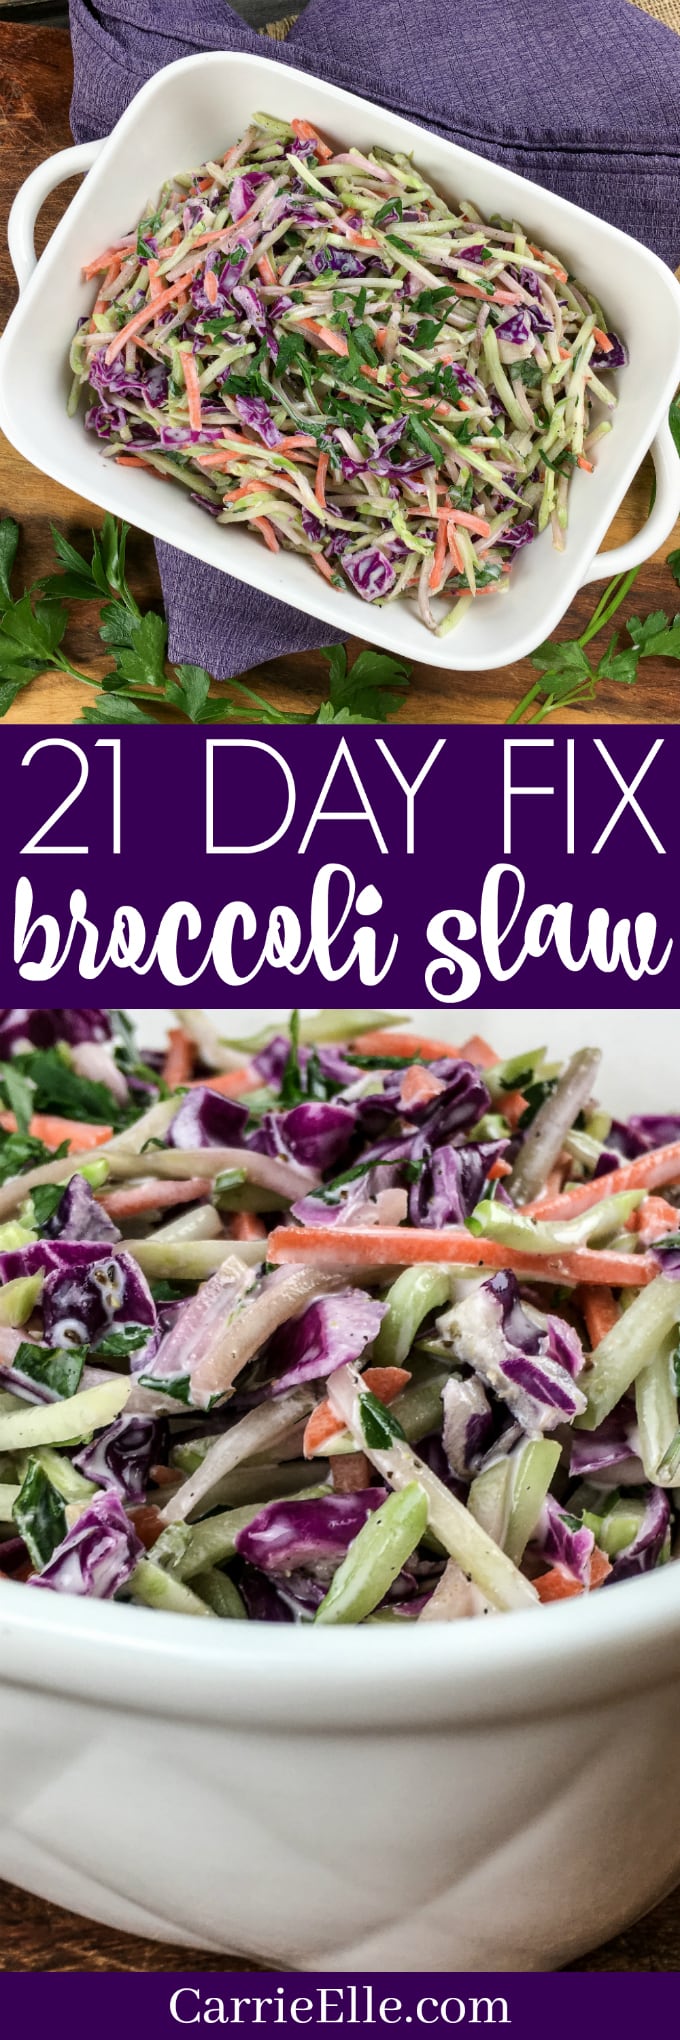 21 Day Fix Broccoli Slaw